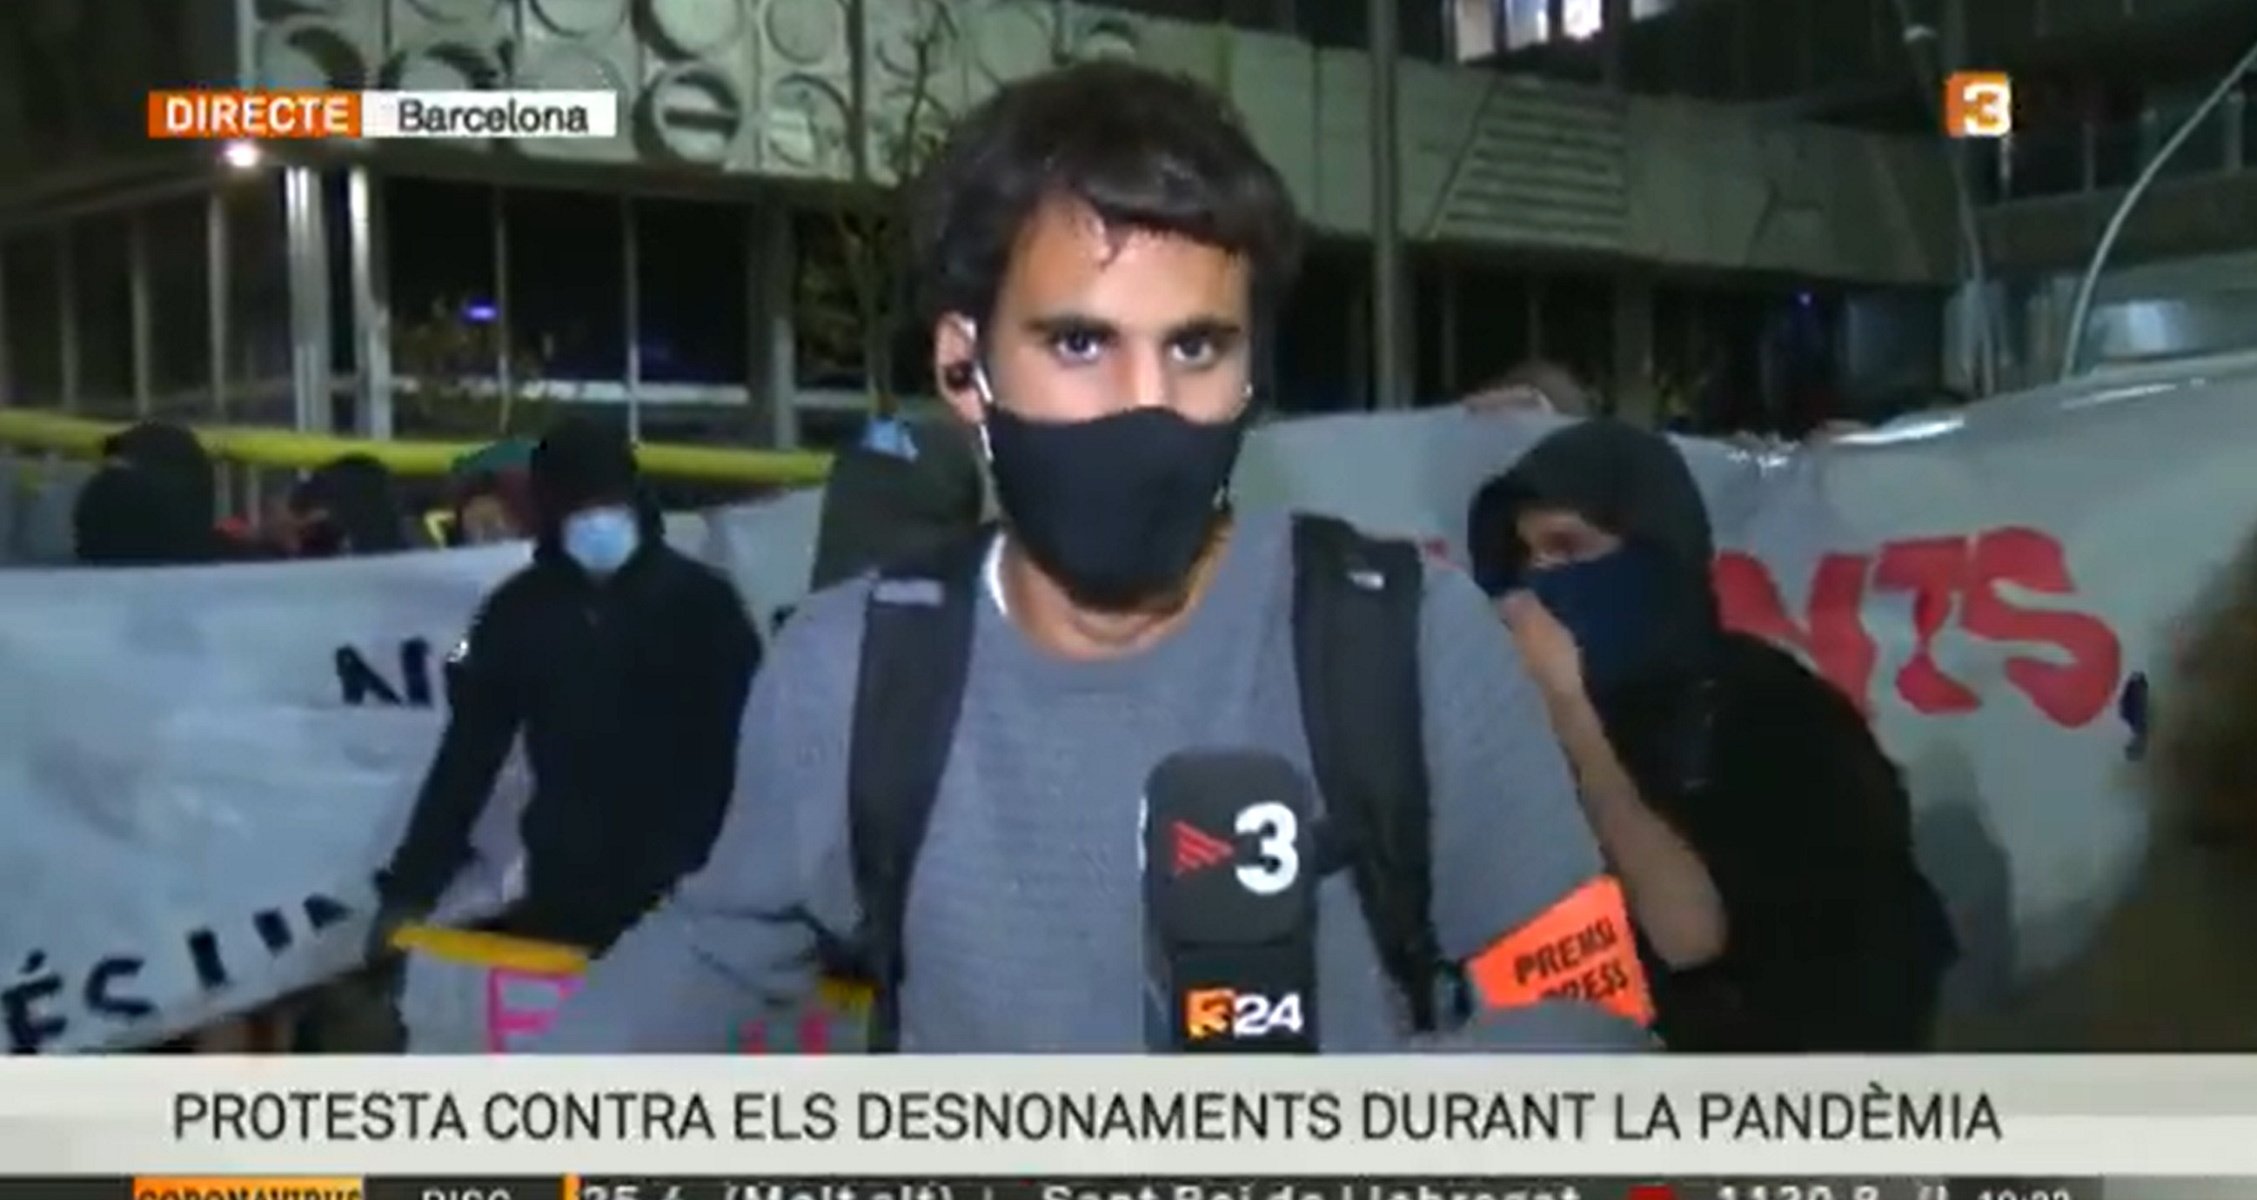 Increpan a un periodista de TV3 en la manifestación contra desahucios